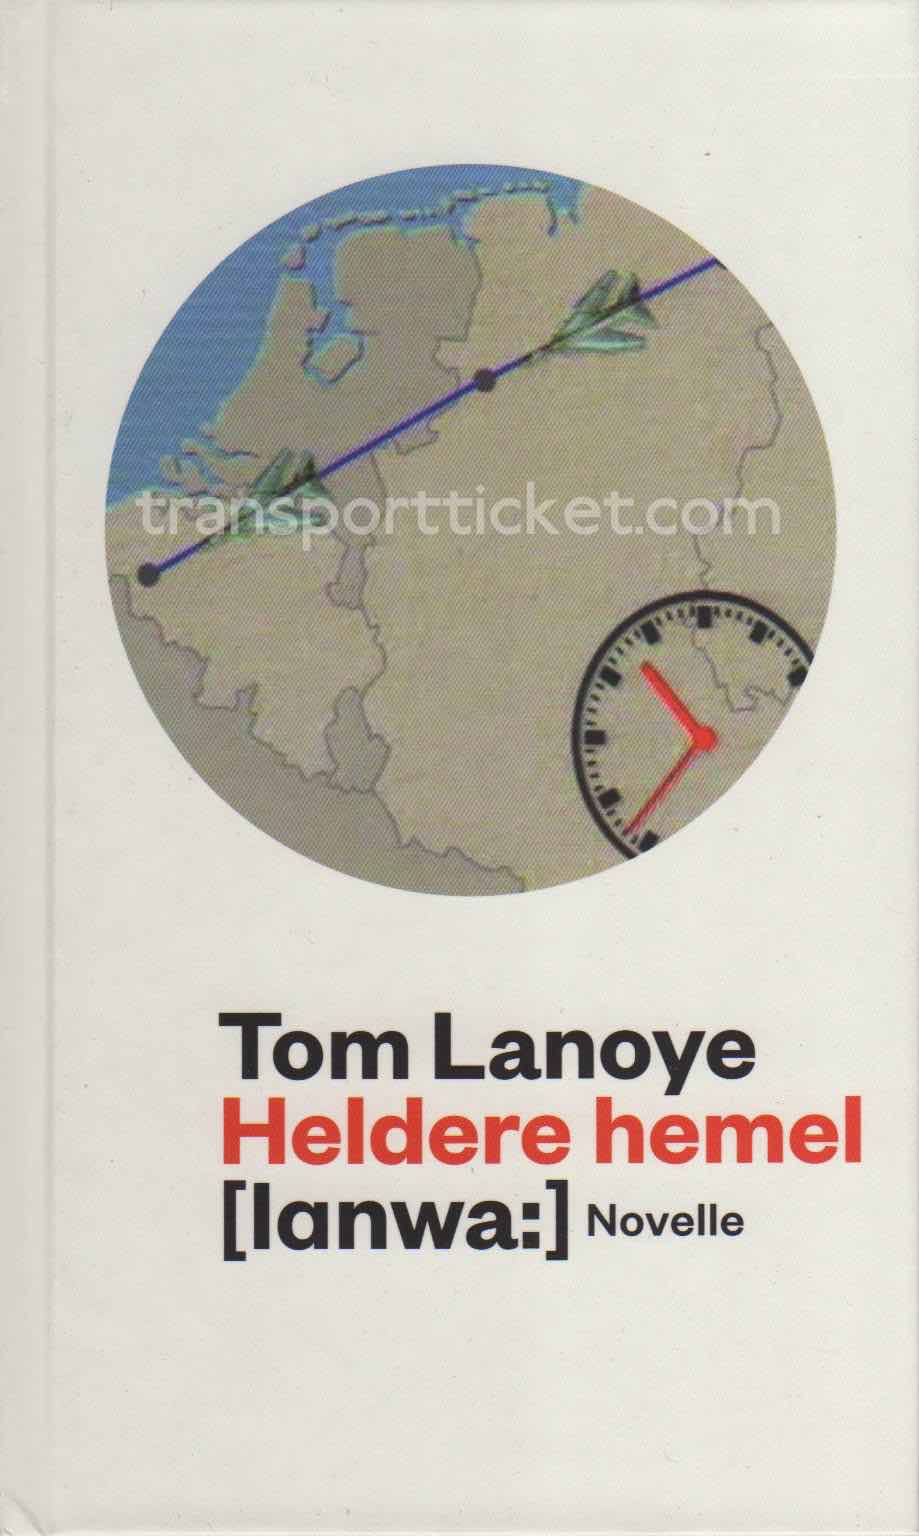 Tom Lanoye - Heldere hemel (2012)